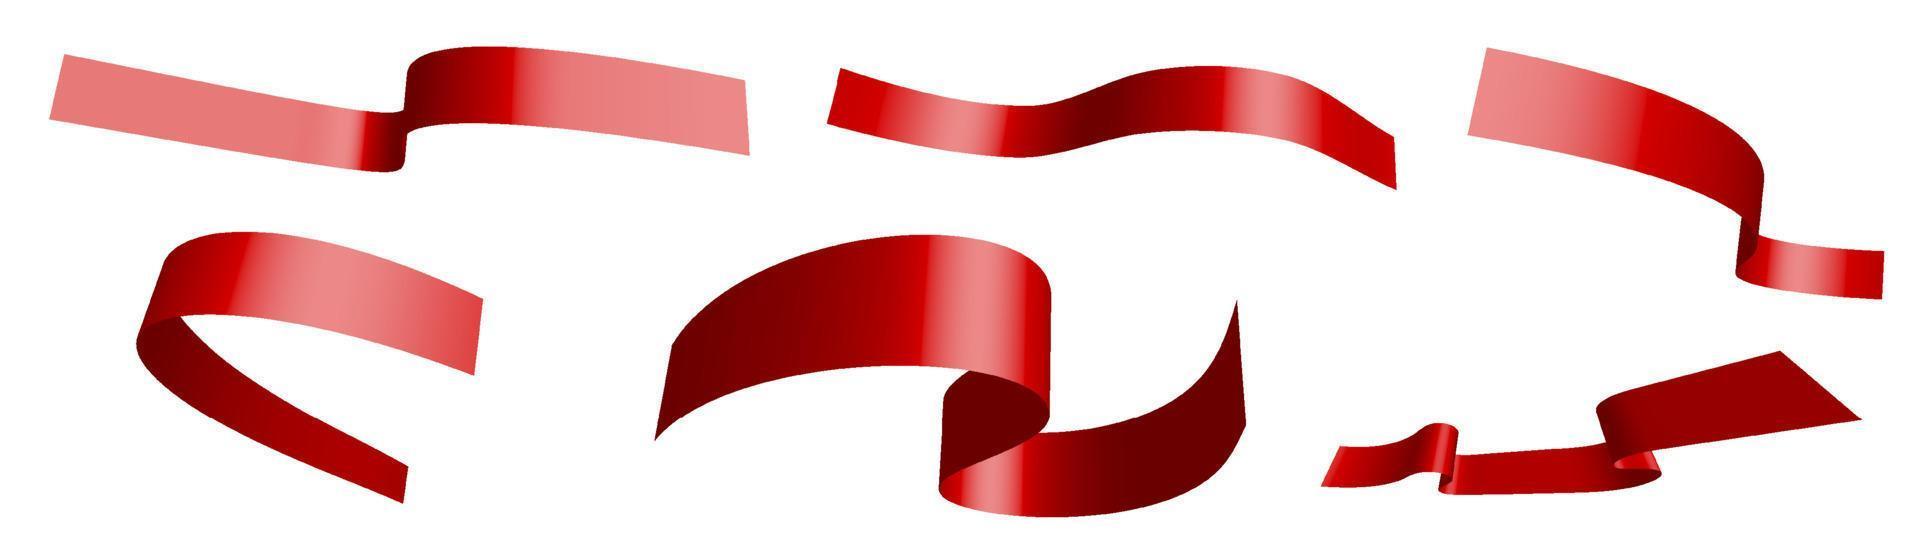 conjunto de fitas festivas vermelhas sobre fundo branco. dia mundial de luta contra a sida 1 de dezembro. separação em camadas inferior e superior. elemento de design. vetor em fundo branco